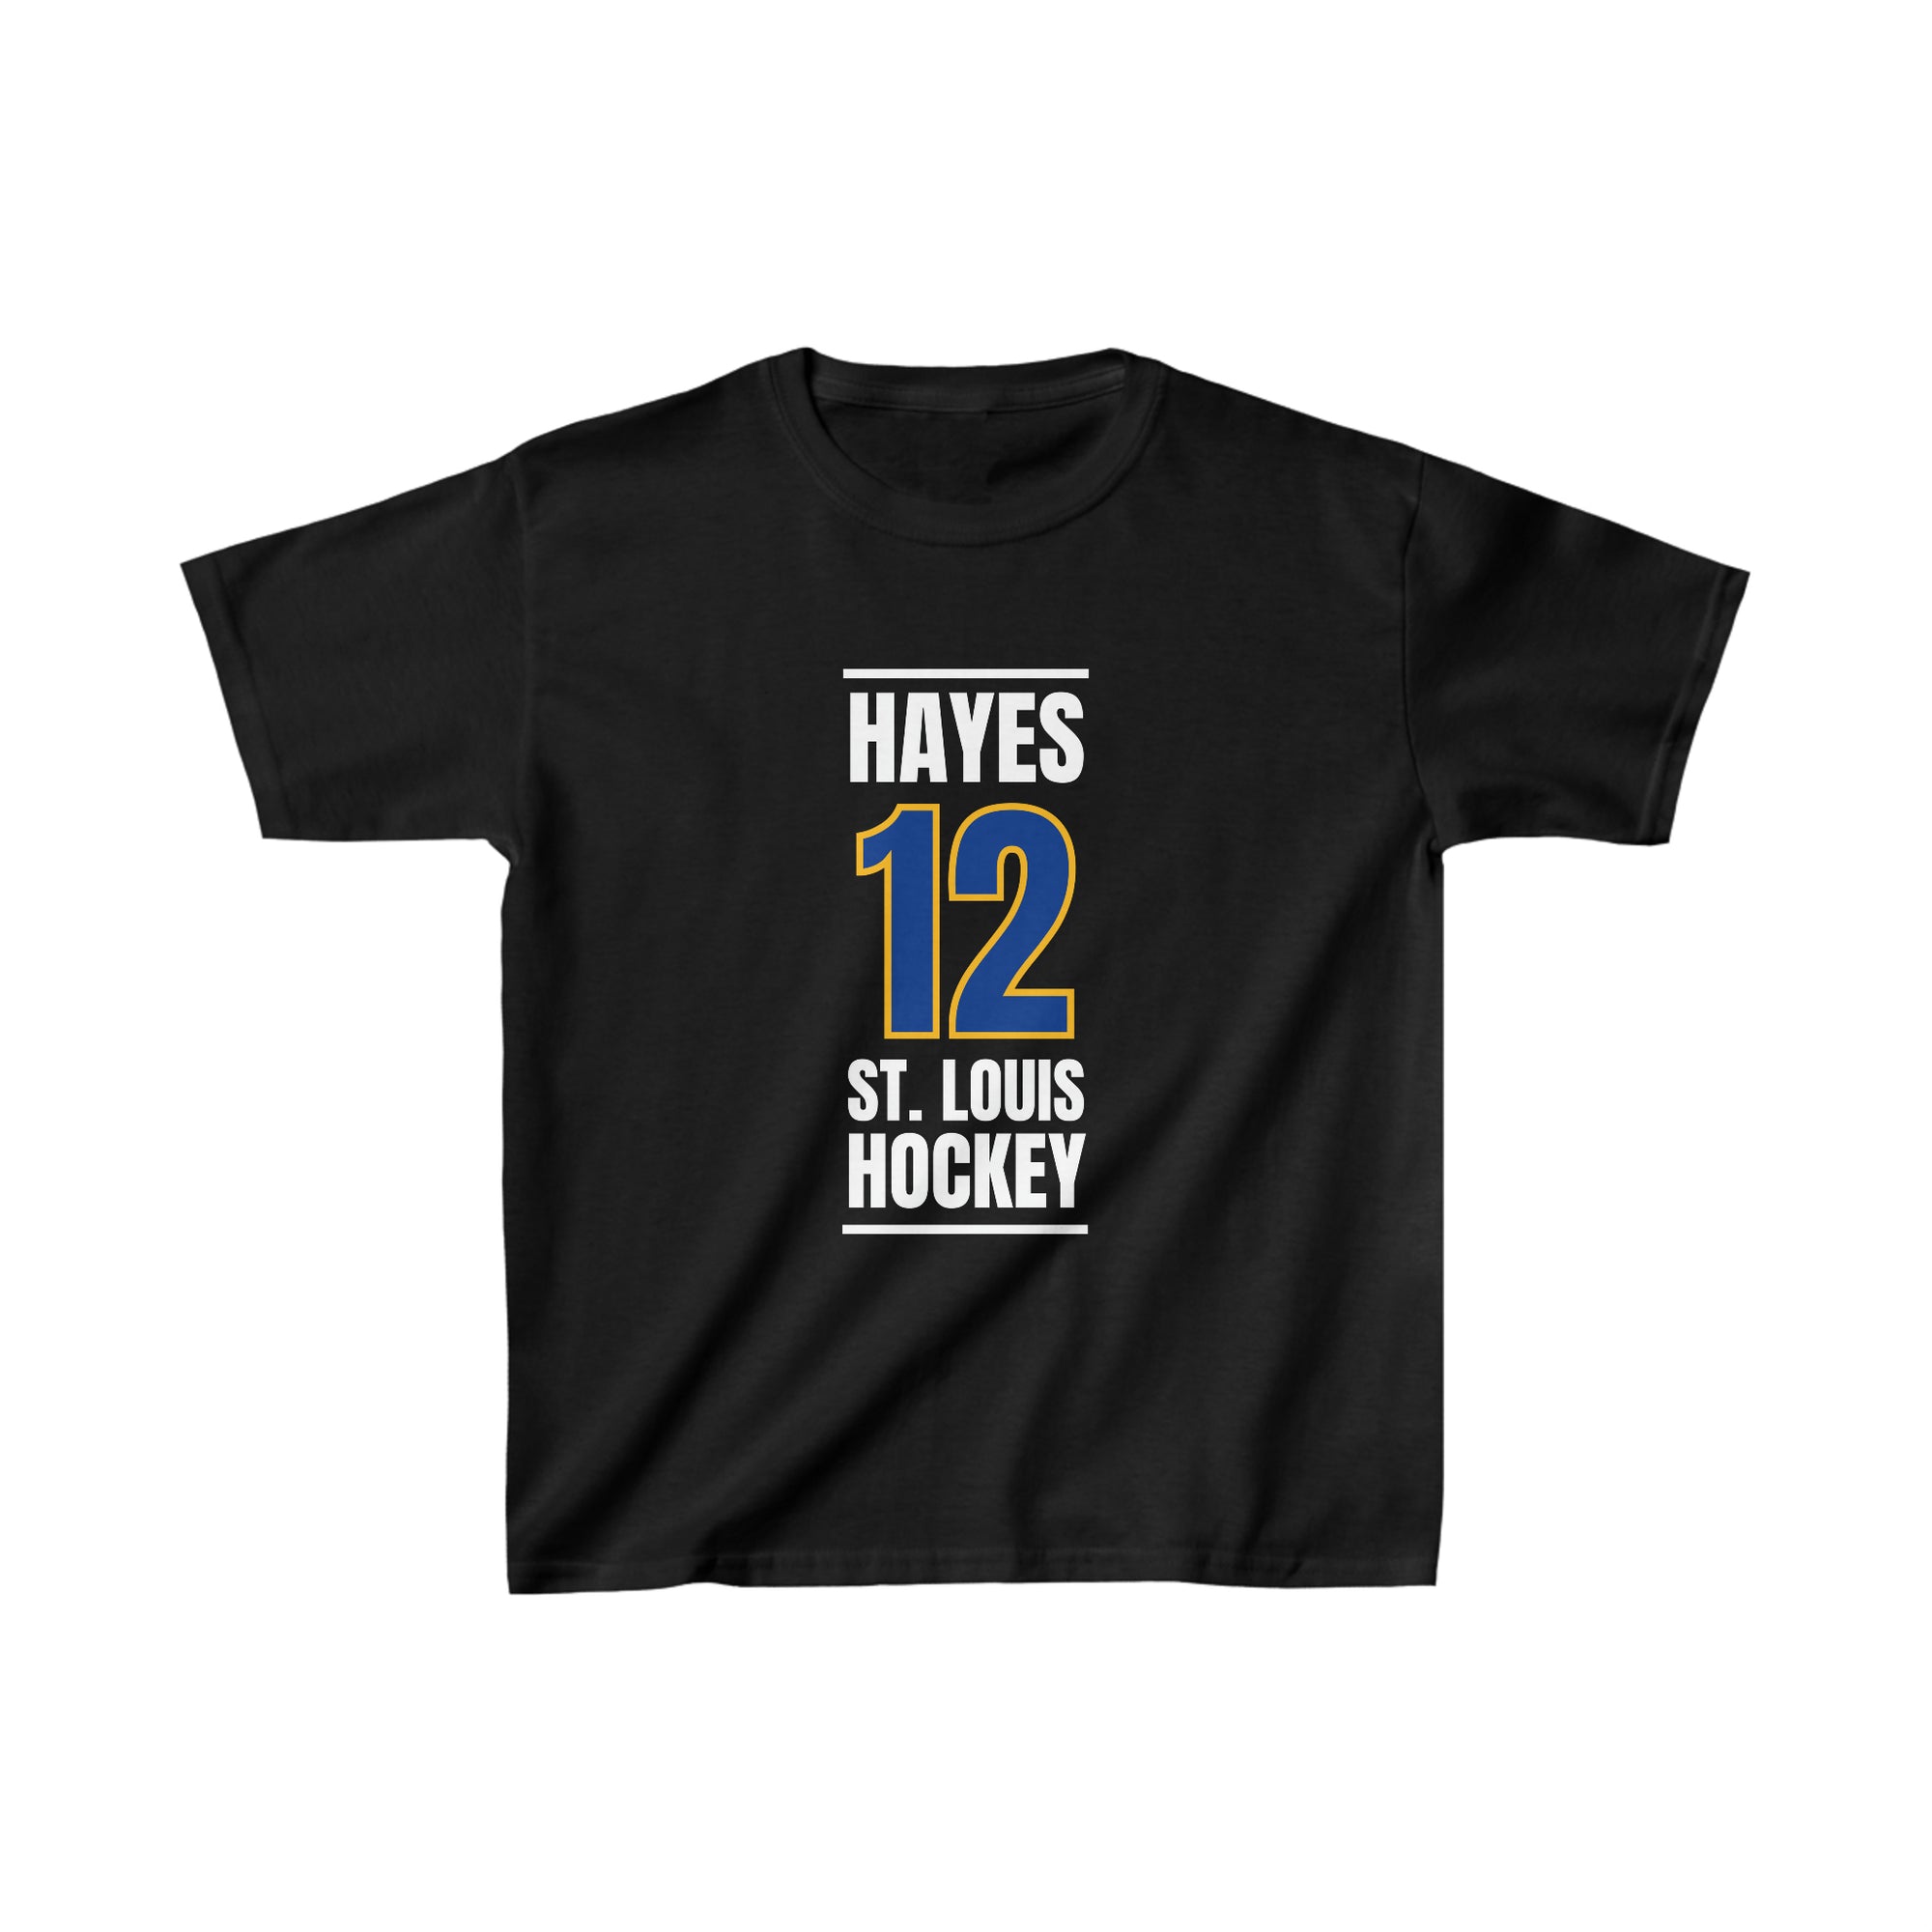 Hayes 12 St. Louis Hockey Blue Vertical Design Kids Tee